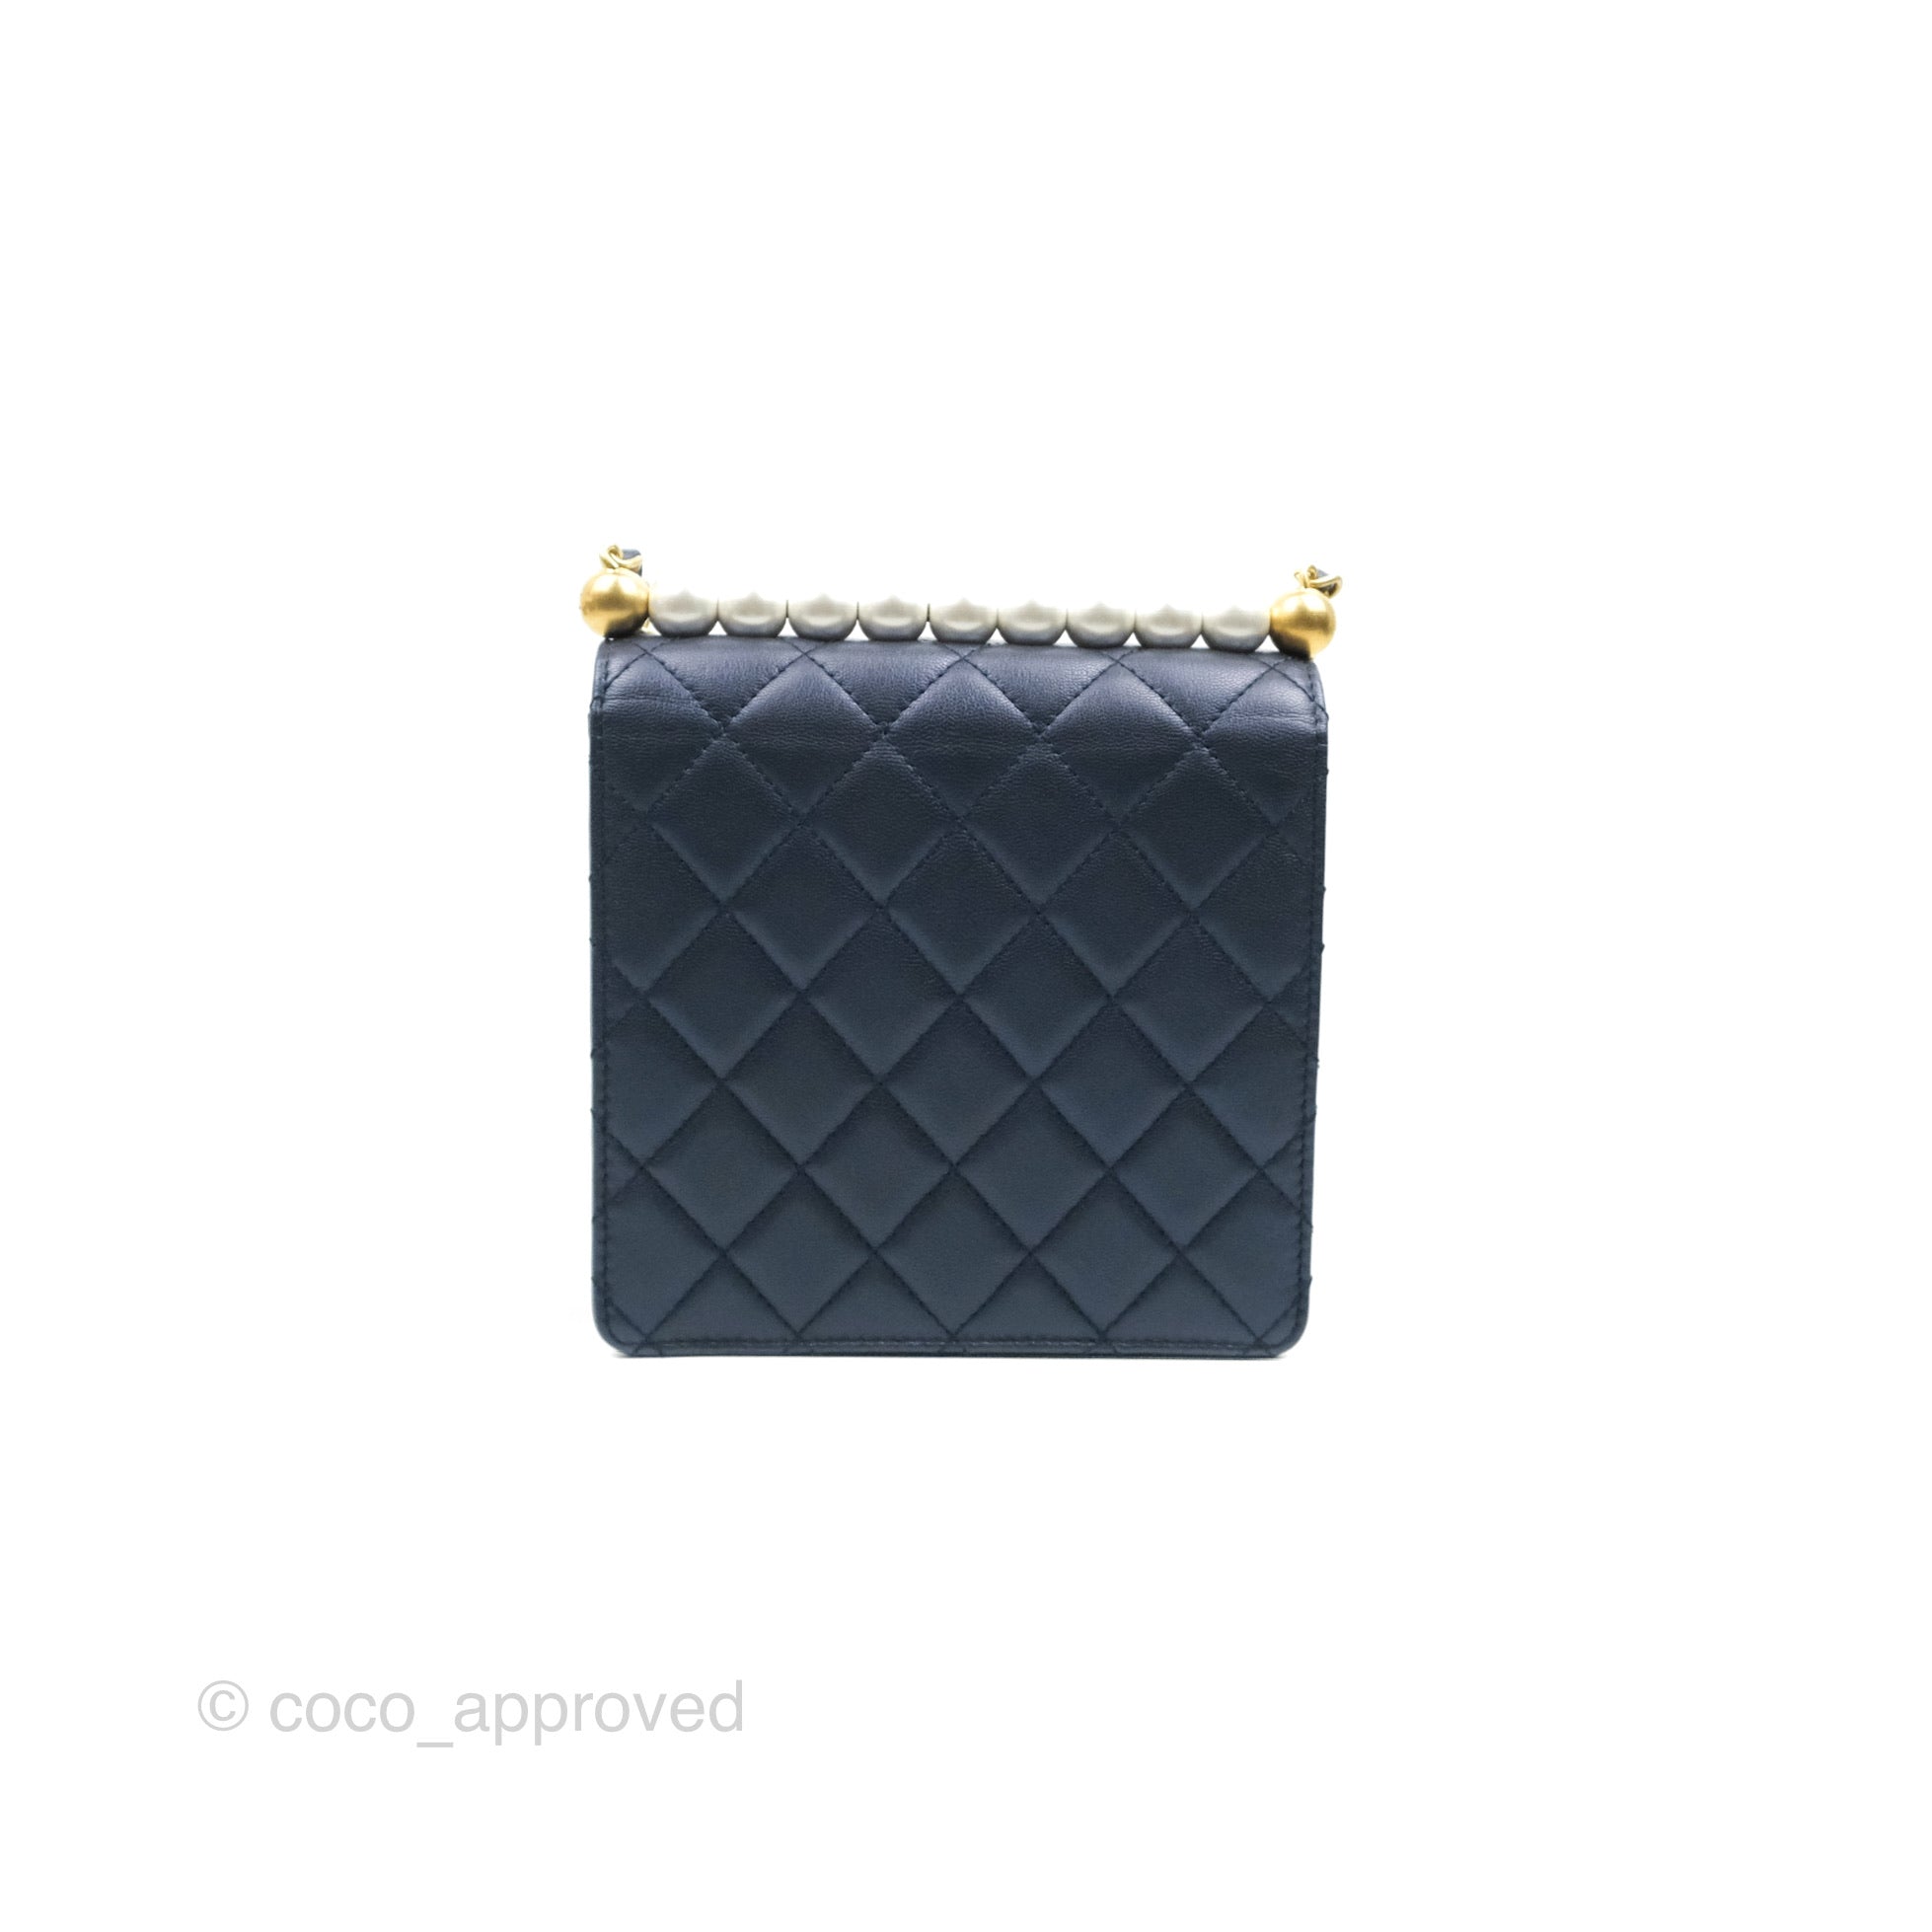 Chanel 2019 Medium Chic Pearls Flap Bag - Handbags - CHA409102